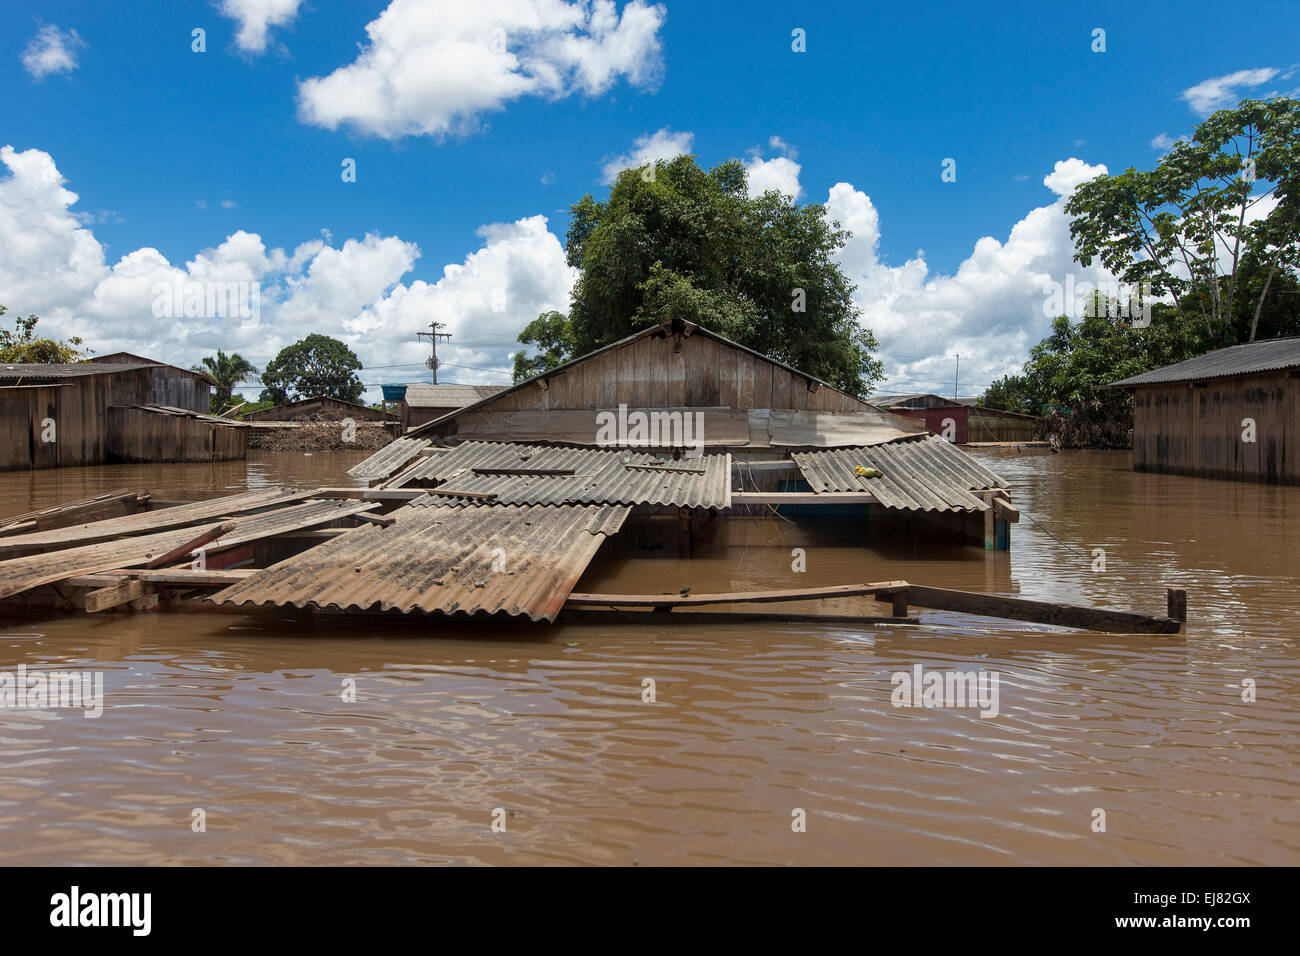 2015 Inondations en Amazonie brésilienne, maison inondée dans le district de Taquari, ville de Rio Branco, l'état d'Acre. Les inondations ont touché des milliers de personnes dans l'Etat d'Acre, dans le nord du Brésil, depuis le 23 février 2015, lorsque certaines des rivières de l'état, en particulier l'Acre, la rivière a débordé. De plus fortes précipitations a forcé les niveaux de la rivière plus haut encore, et le 03 mars 2015, le gouvernement fédéral du Brésil a déclaré l'état d'urgence dans l'état d'Acre, où les conditions d'inondations situation a été décrite comme la pire en 132 ans. Banque D'Images